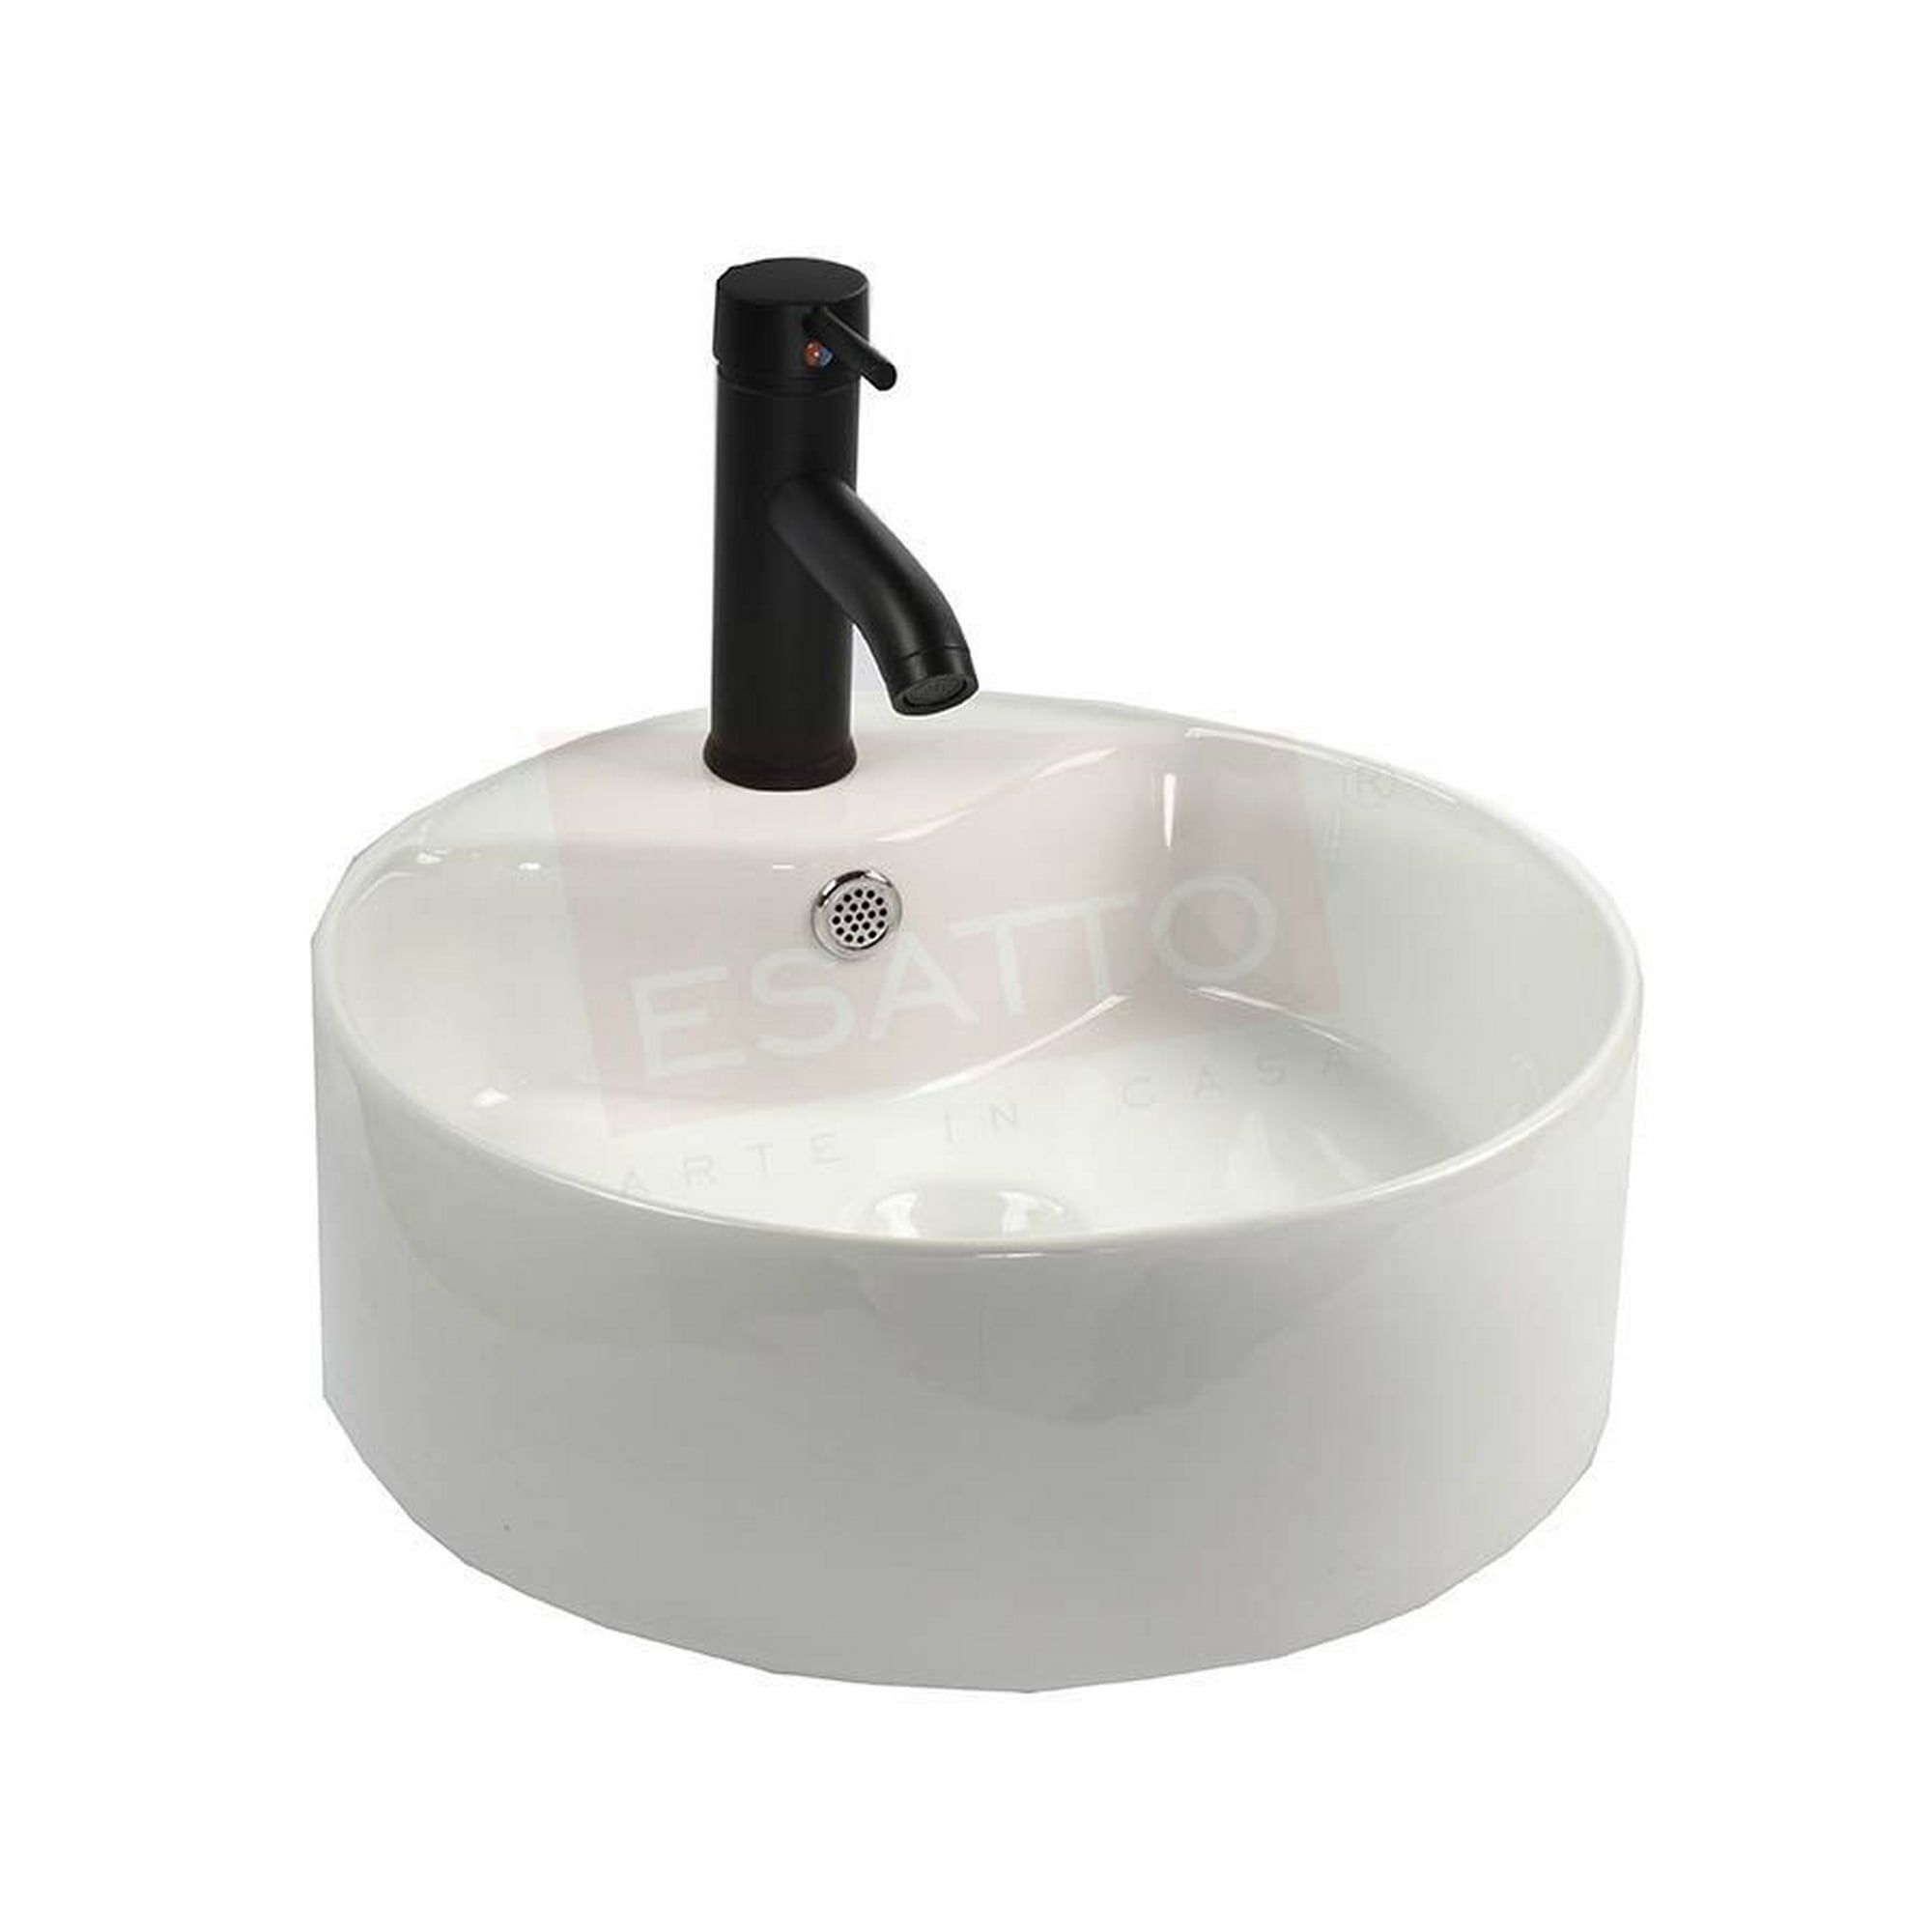 Esatto® kit rondo n paquete de precio mejorado con lavabo, llave y desagües listo para instalar esatto paquete completo de lavabo para baño